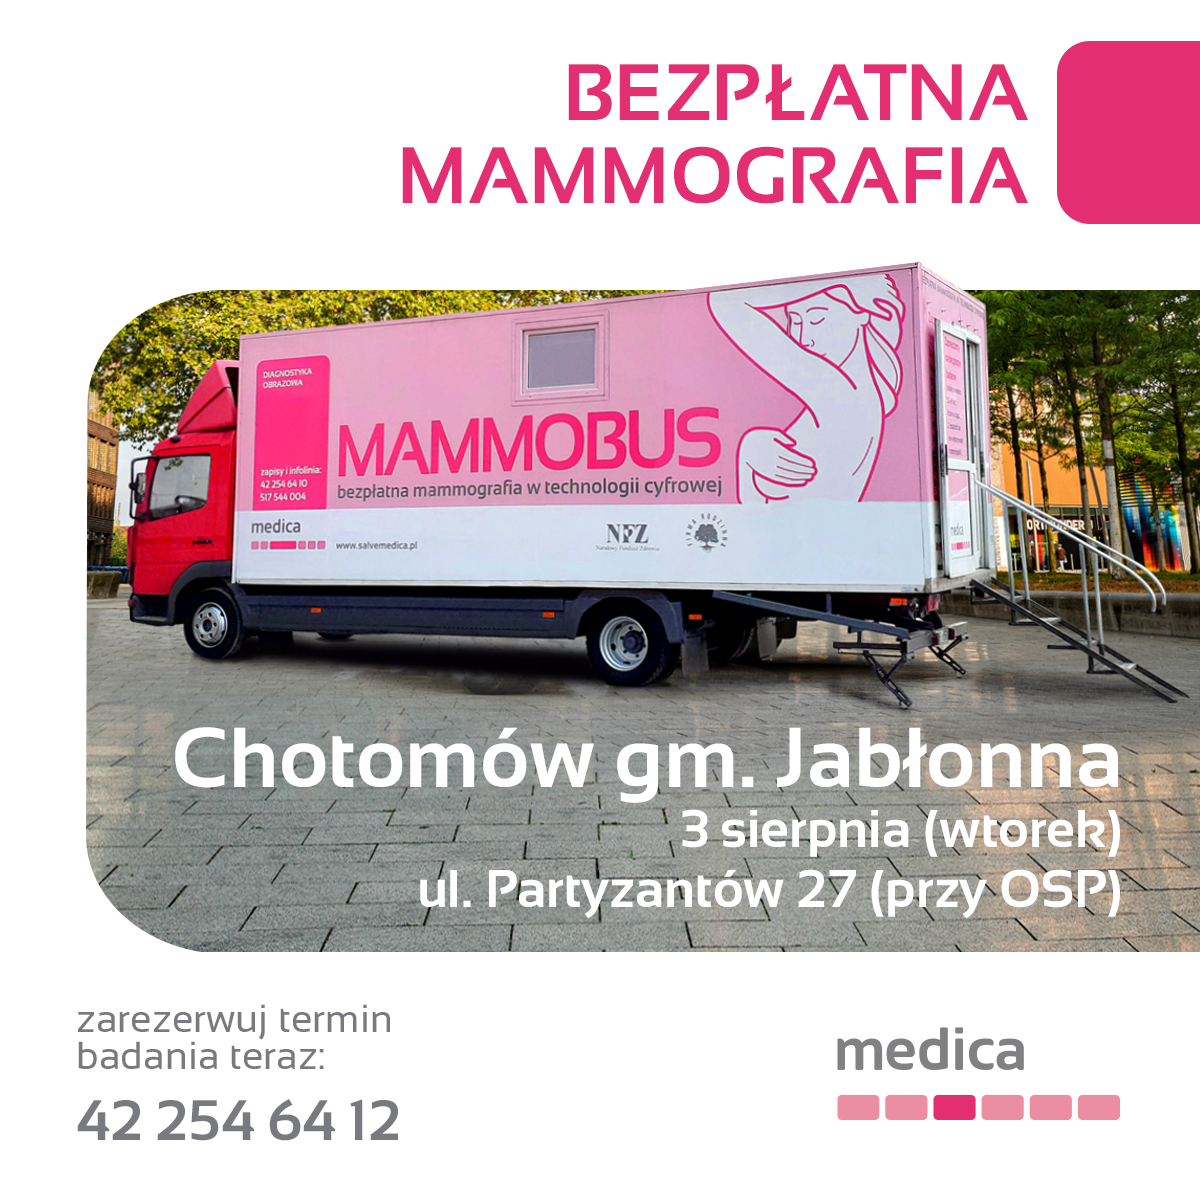 plakat - bezpłatna mammografia w Chotomowie, ul. Partyzantów w dnu 